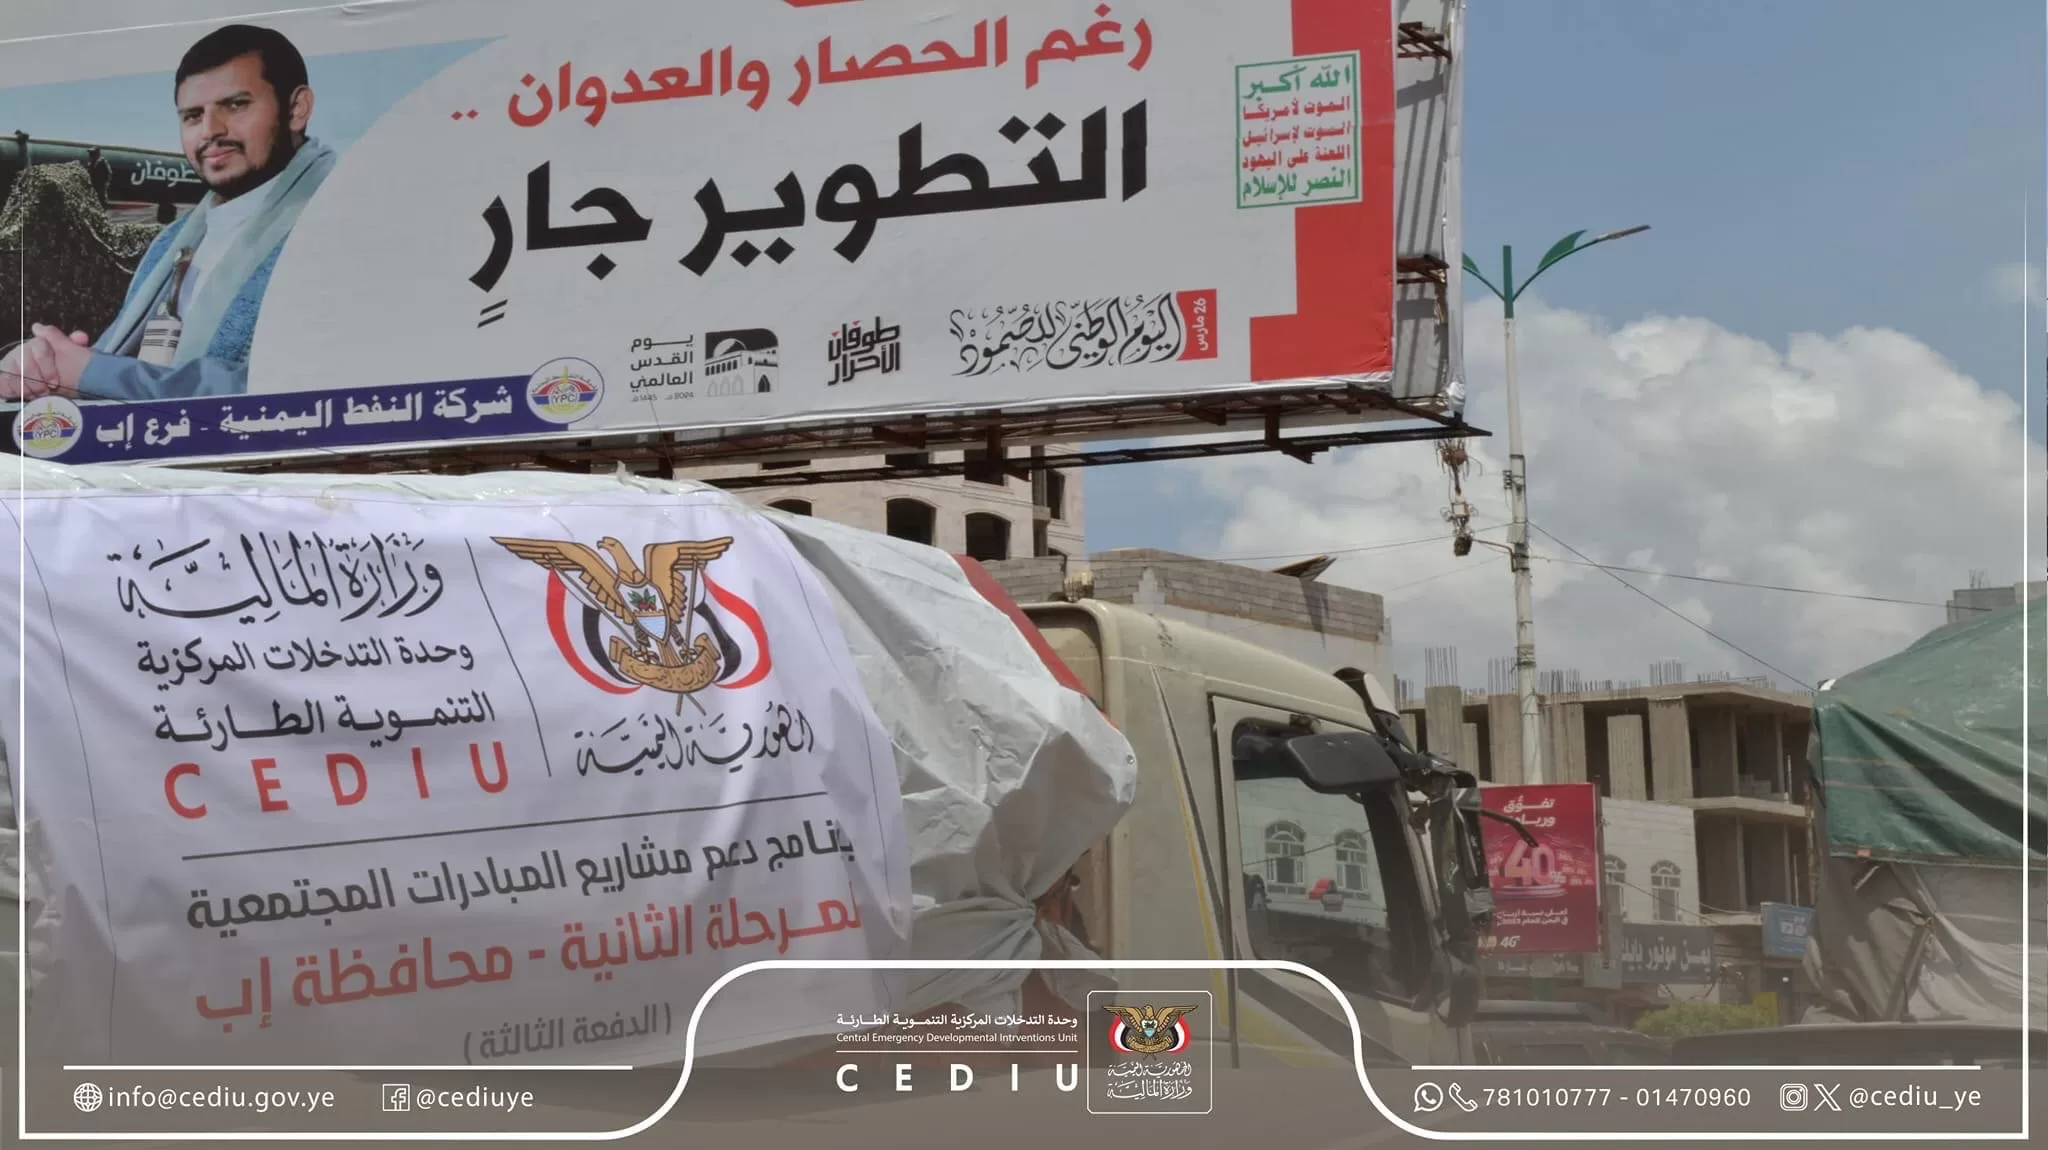 اليمن إب، تسليم 20 ألف كيس الدفعة الثالثة من الدعم المقدم من وحدة التدخلات المركزية التنموية الطارئة.